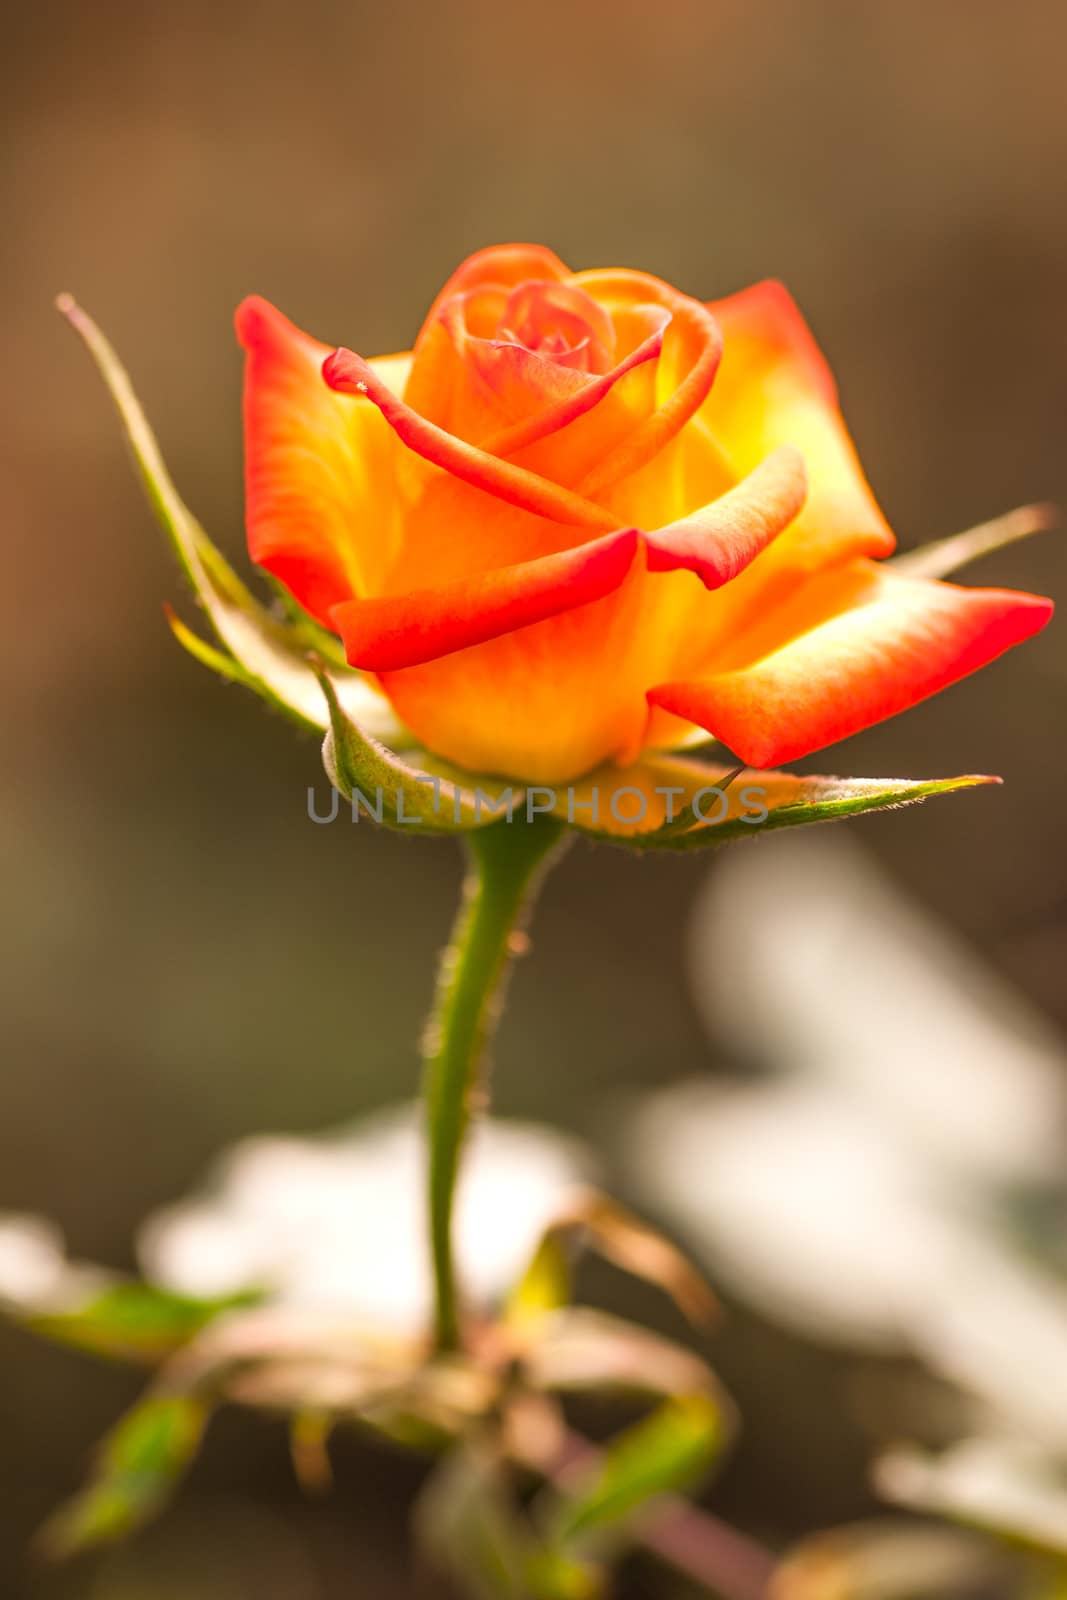 roses orange by jame_j@homail.com